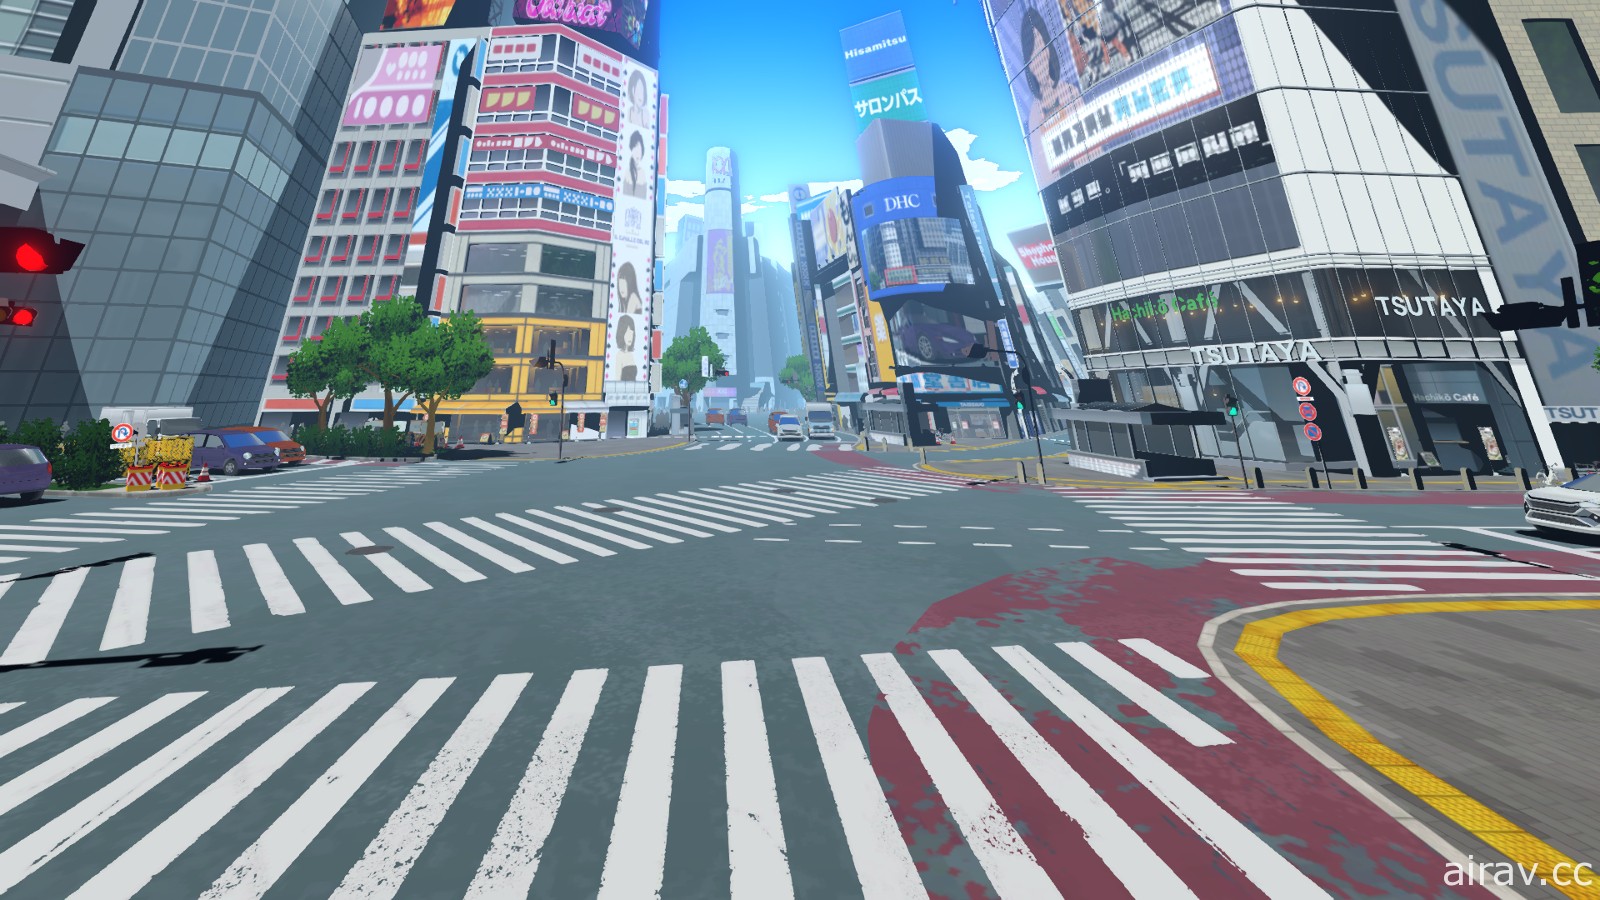 【試玩】《新‧美麗新世界》搭配遊玩影片介紹使用徽章的嶄新戰鬥與細節詳盡的澀谷